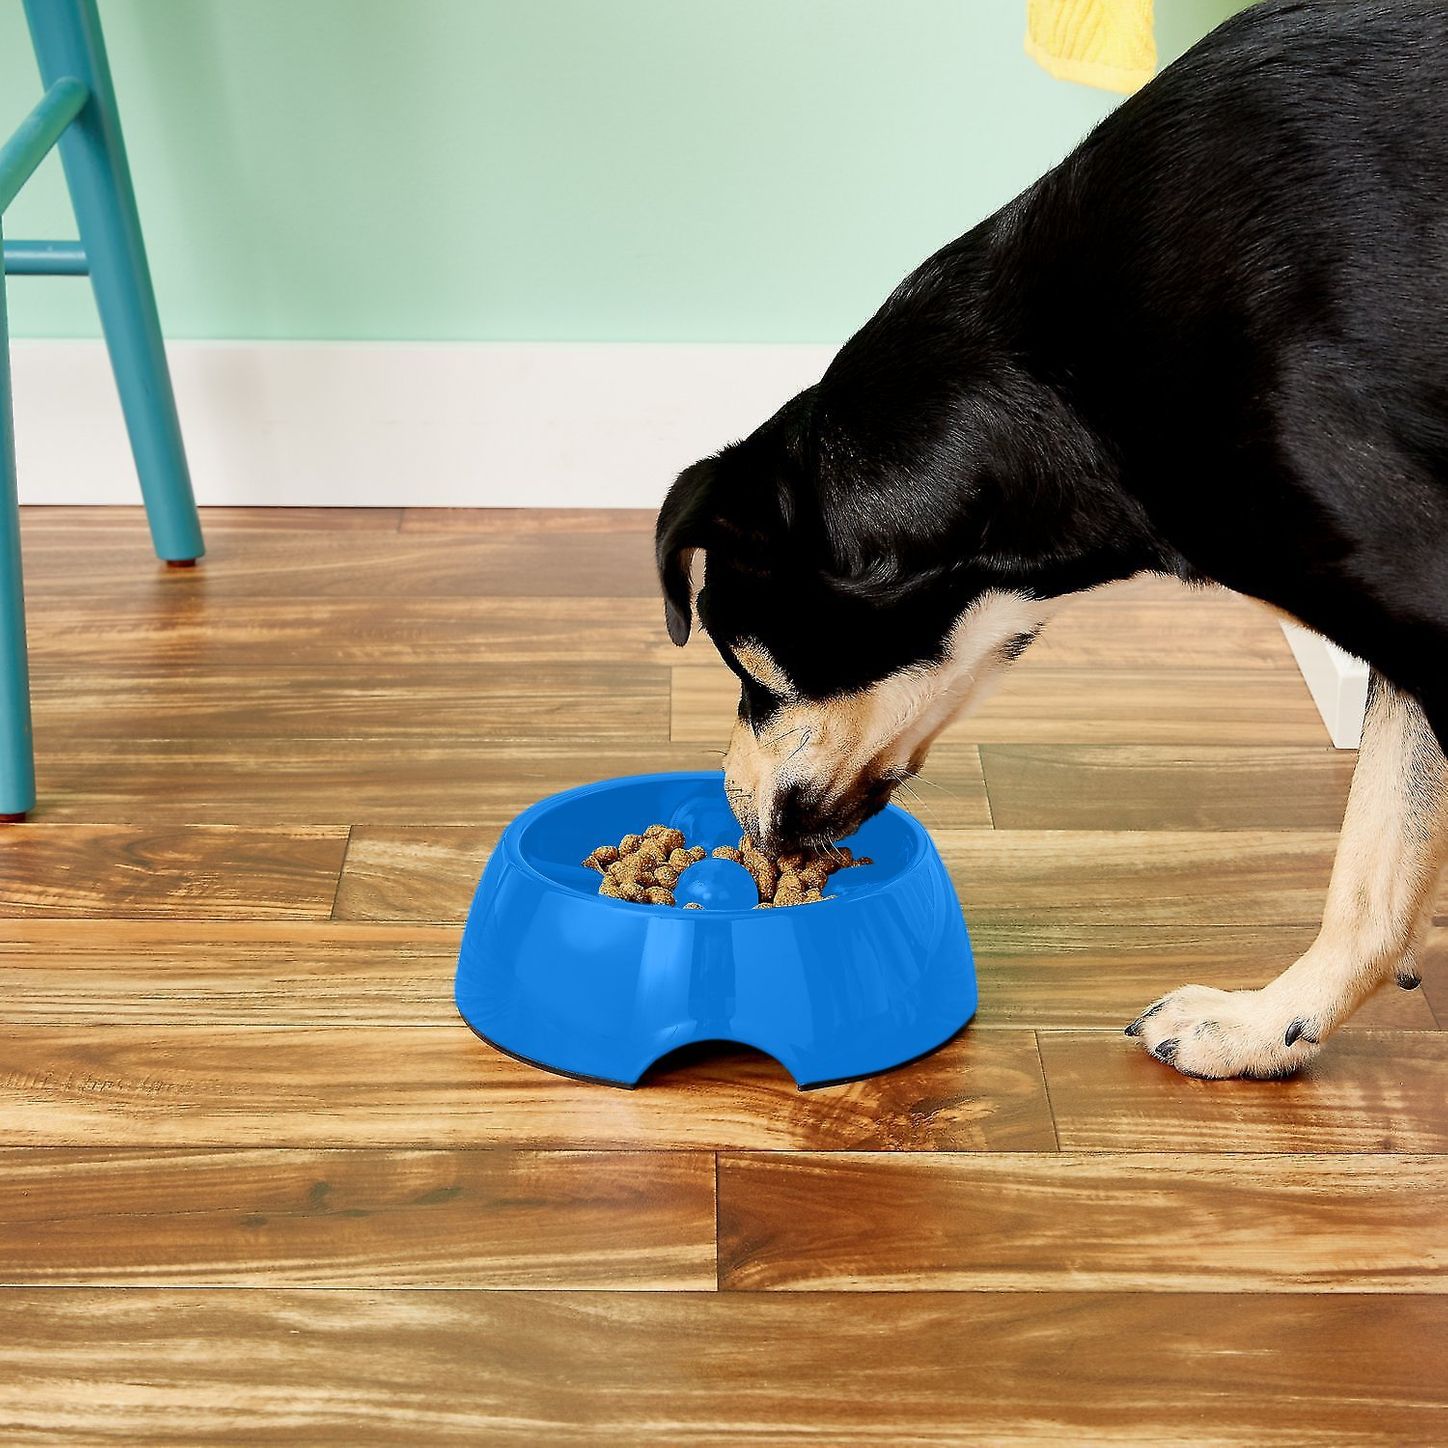 awkvuty dog puzzle toys, dog treat puzzle feeder, ideal dog toy